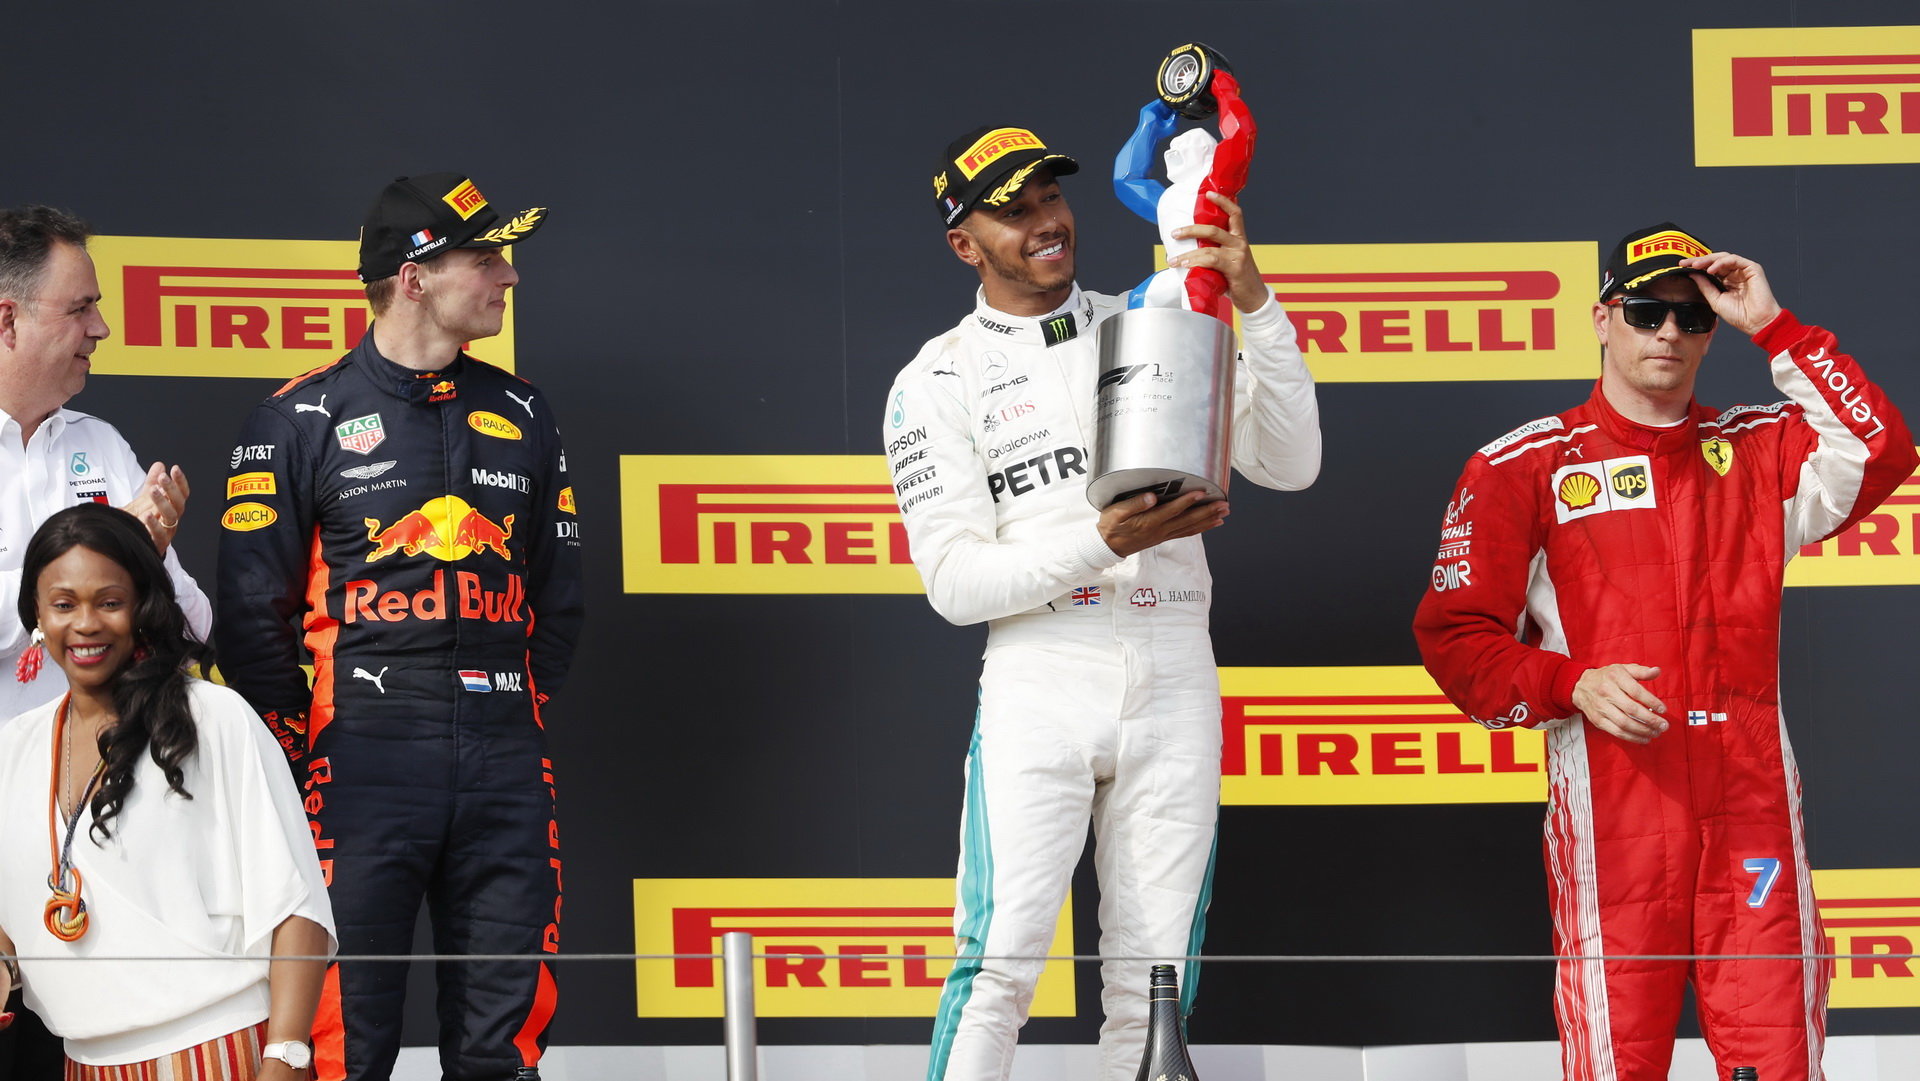 Lewis Hamilton slaví první místo na pódiu po závodě ve Francii